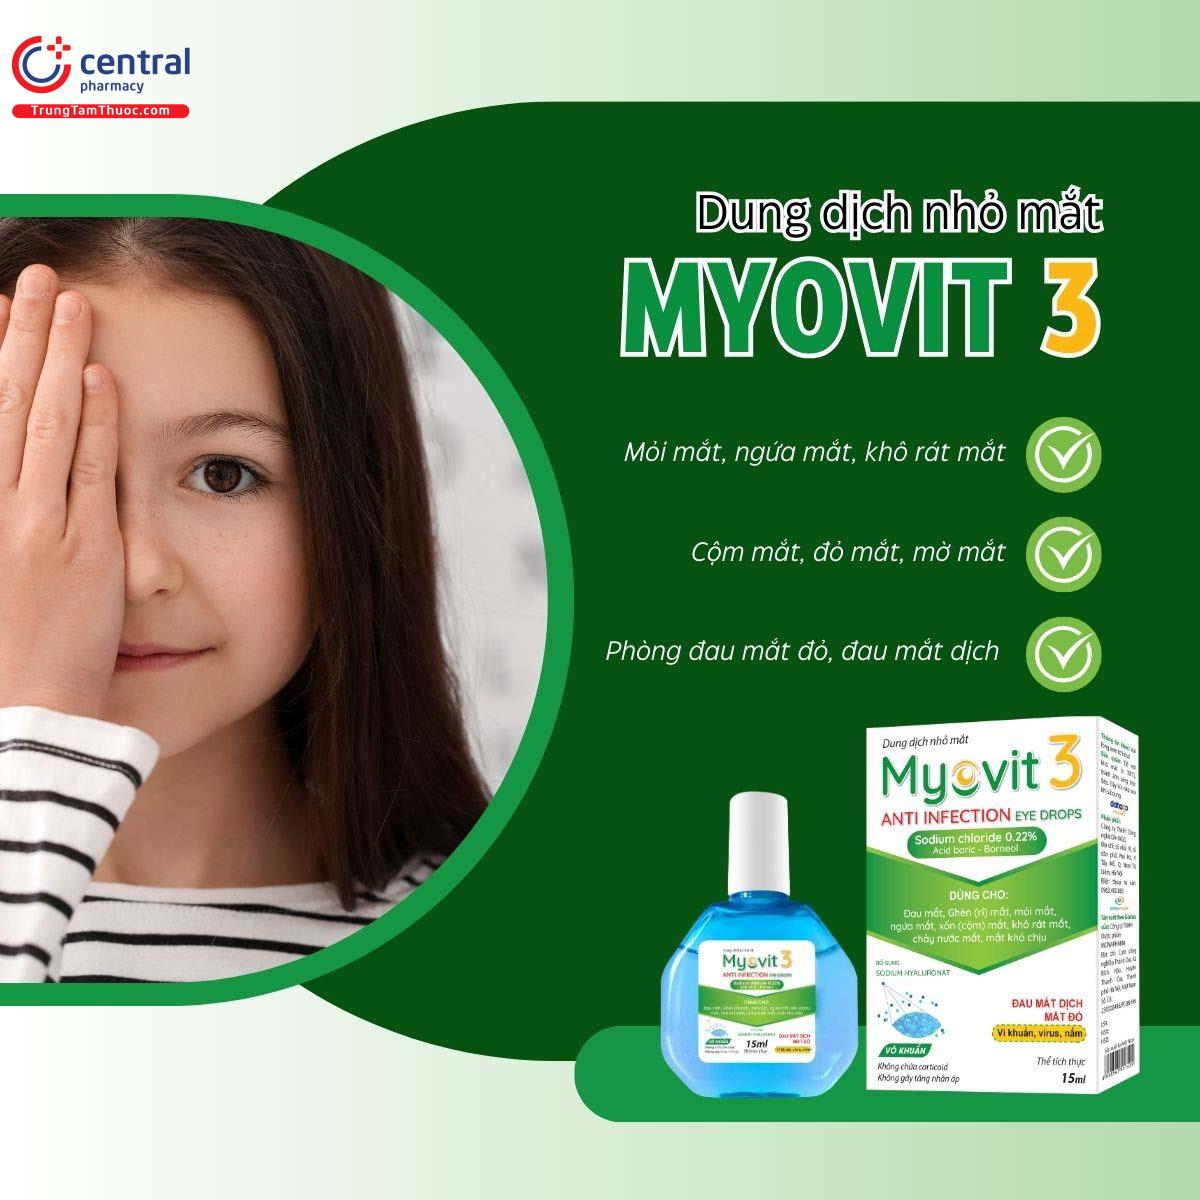 Dung dịch nhỏ mắt Myovit 3 giúp giảm khô mắt